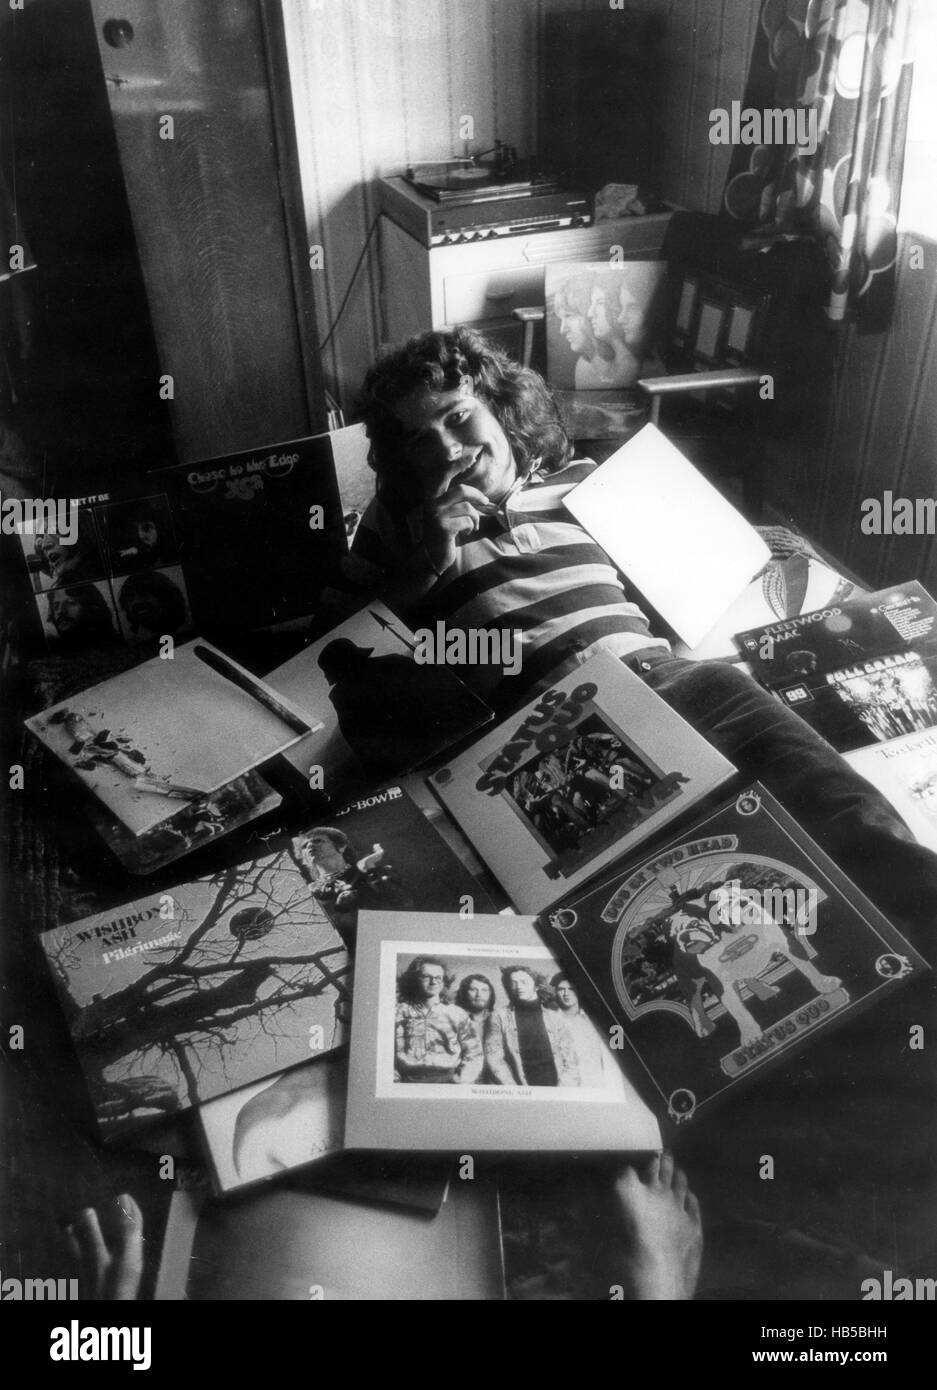 Adolescente con música discos vinilo colección álbum 1970s, colección de discos Gran Bretaña Reino Unido adolescente joven blanco hombre caucásico joven hombre masculino retro colección de discos estudiante Foto de stock